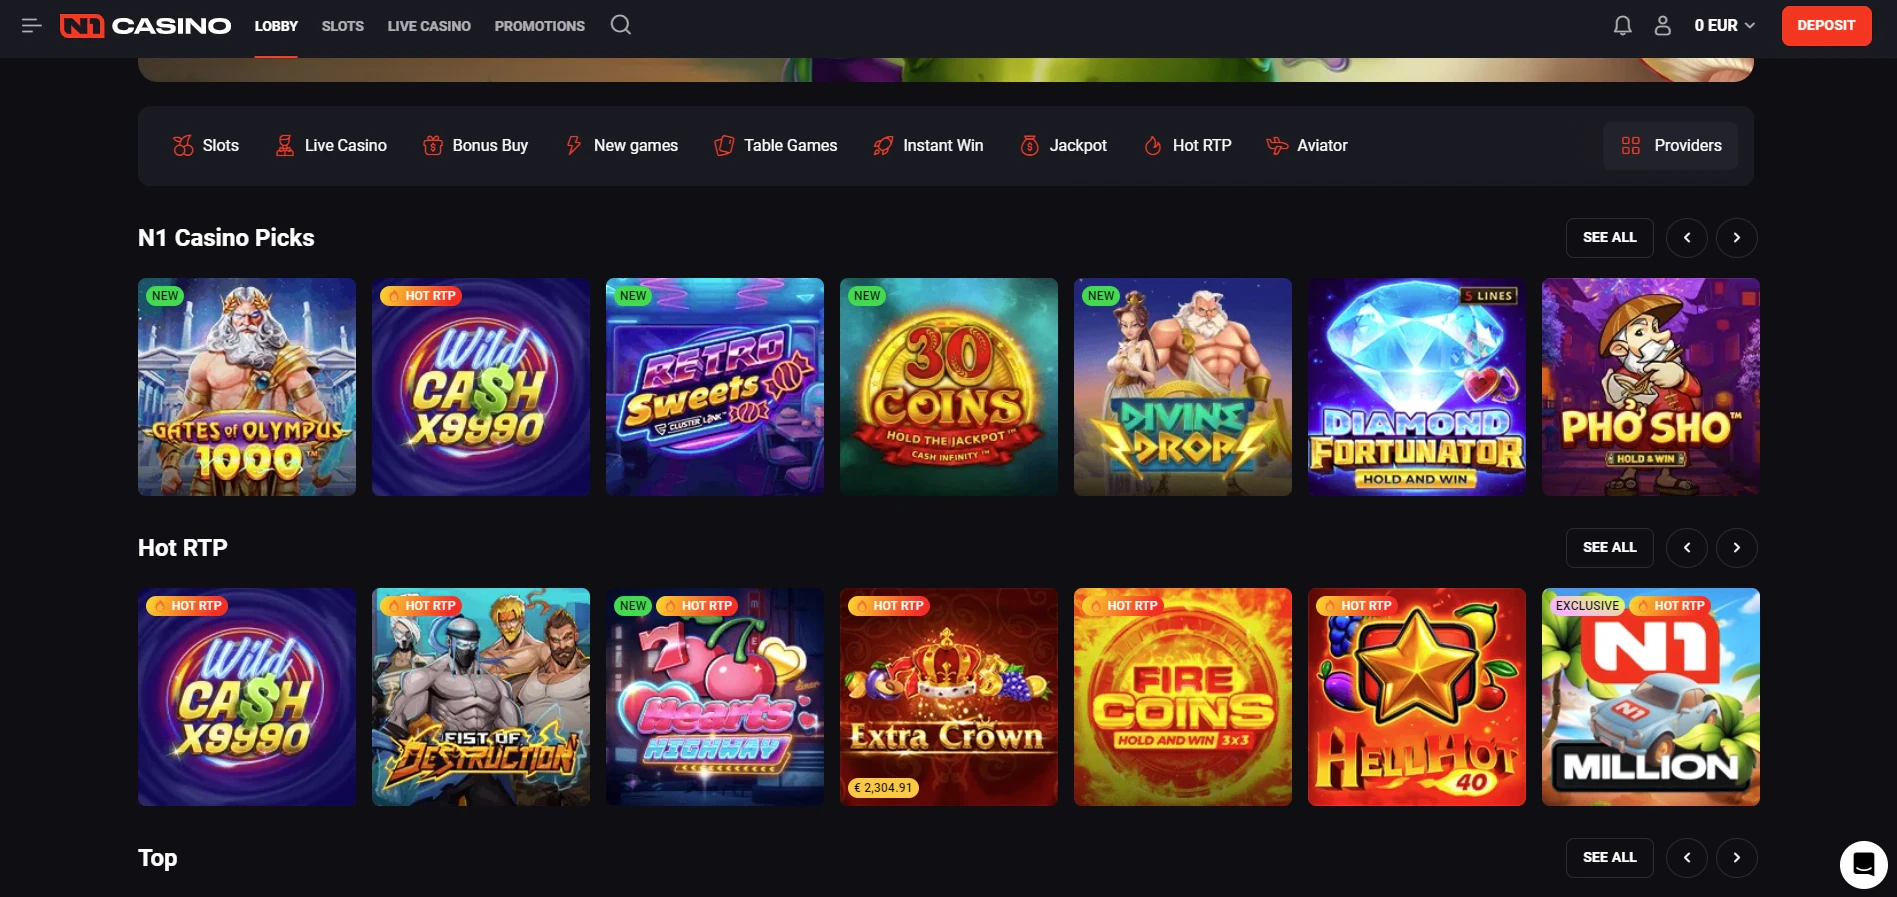 N1 Casino Website Design